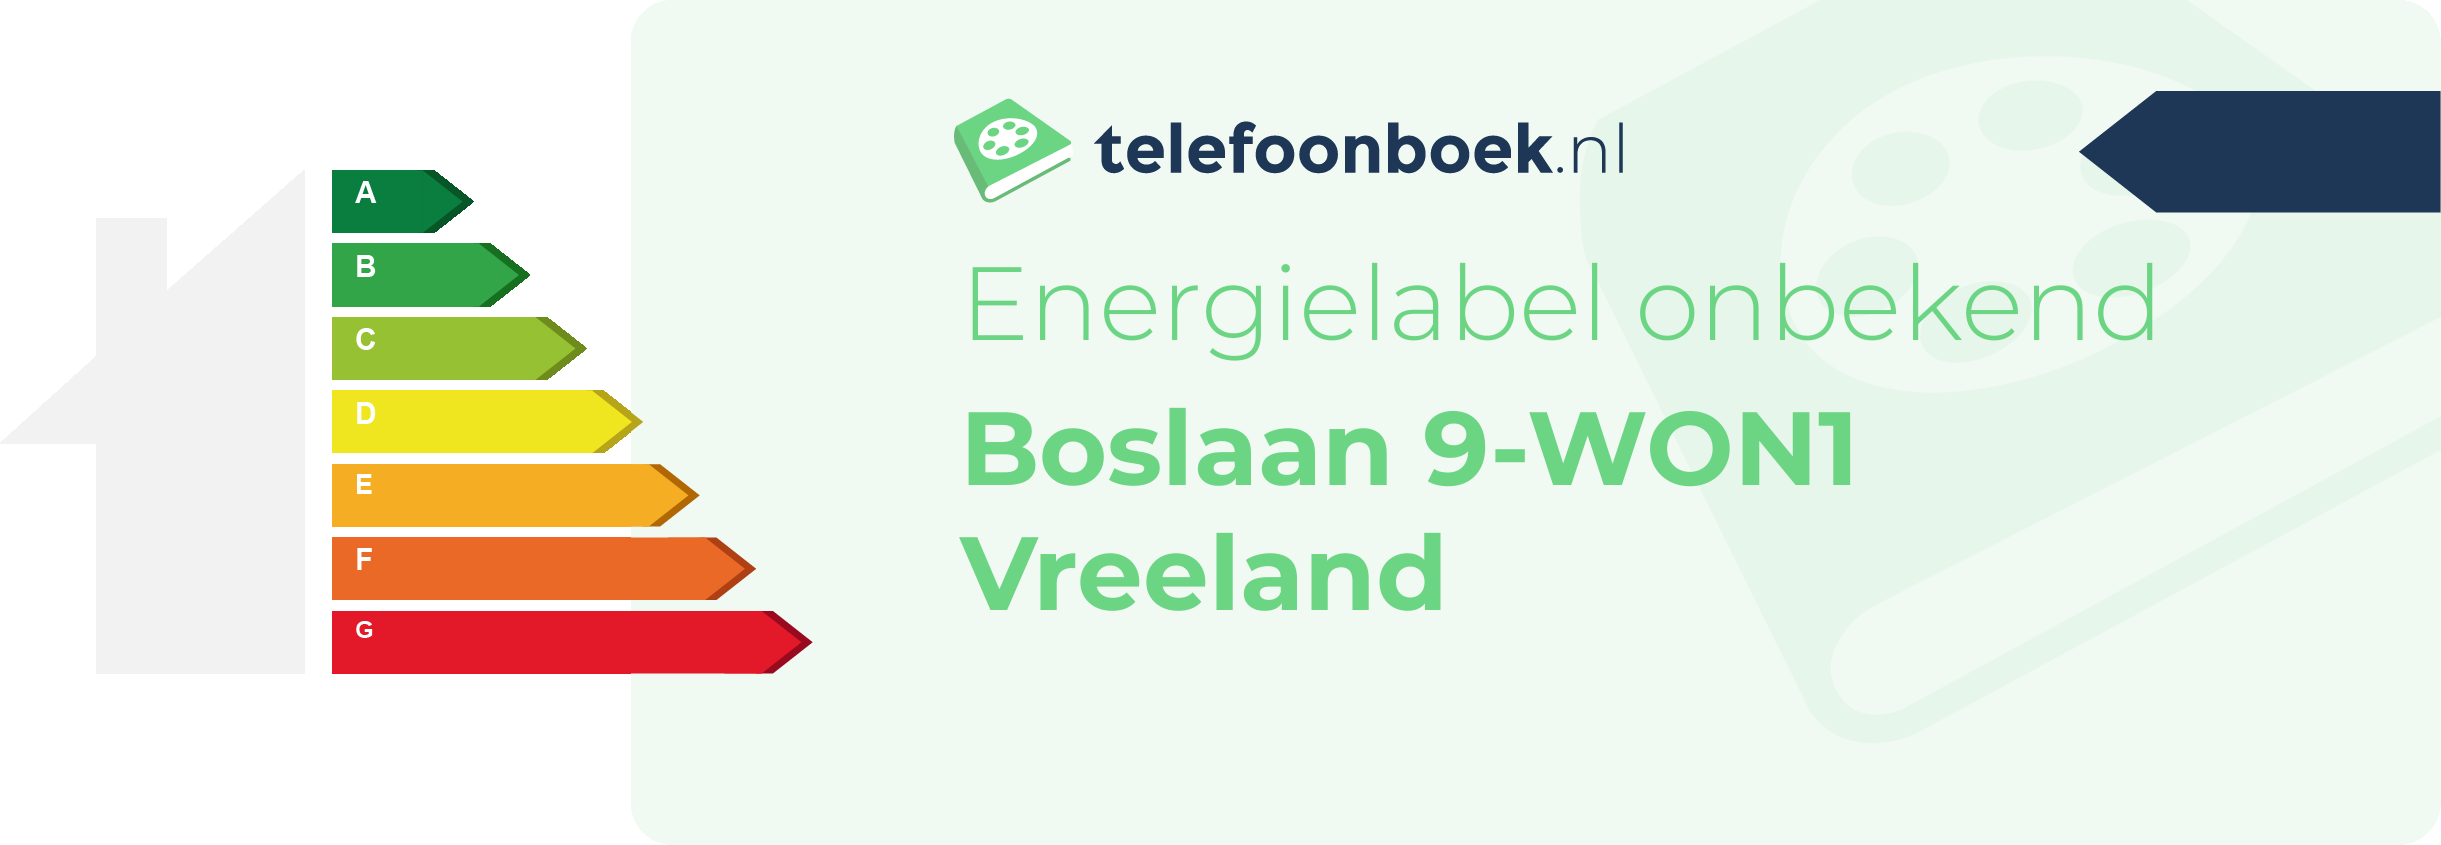 Energielabel Boslaan 9-WON1 Vreeland